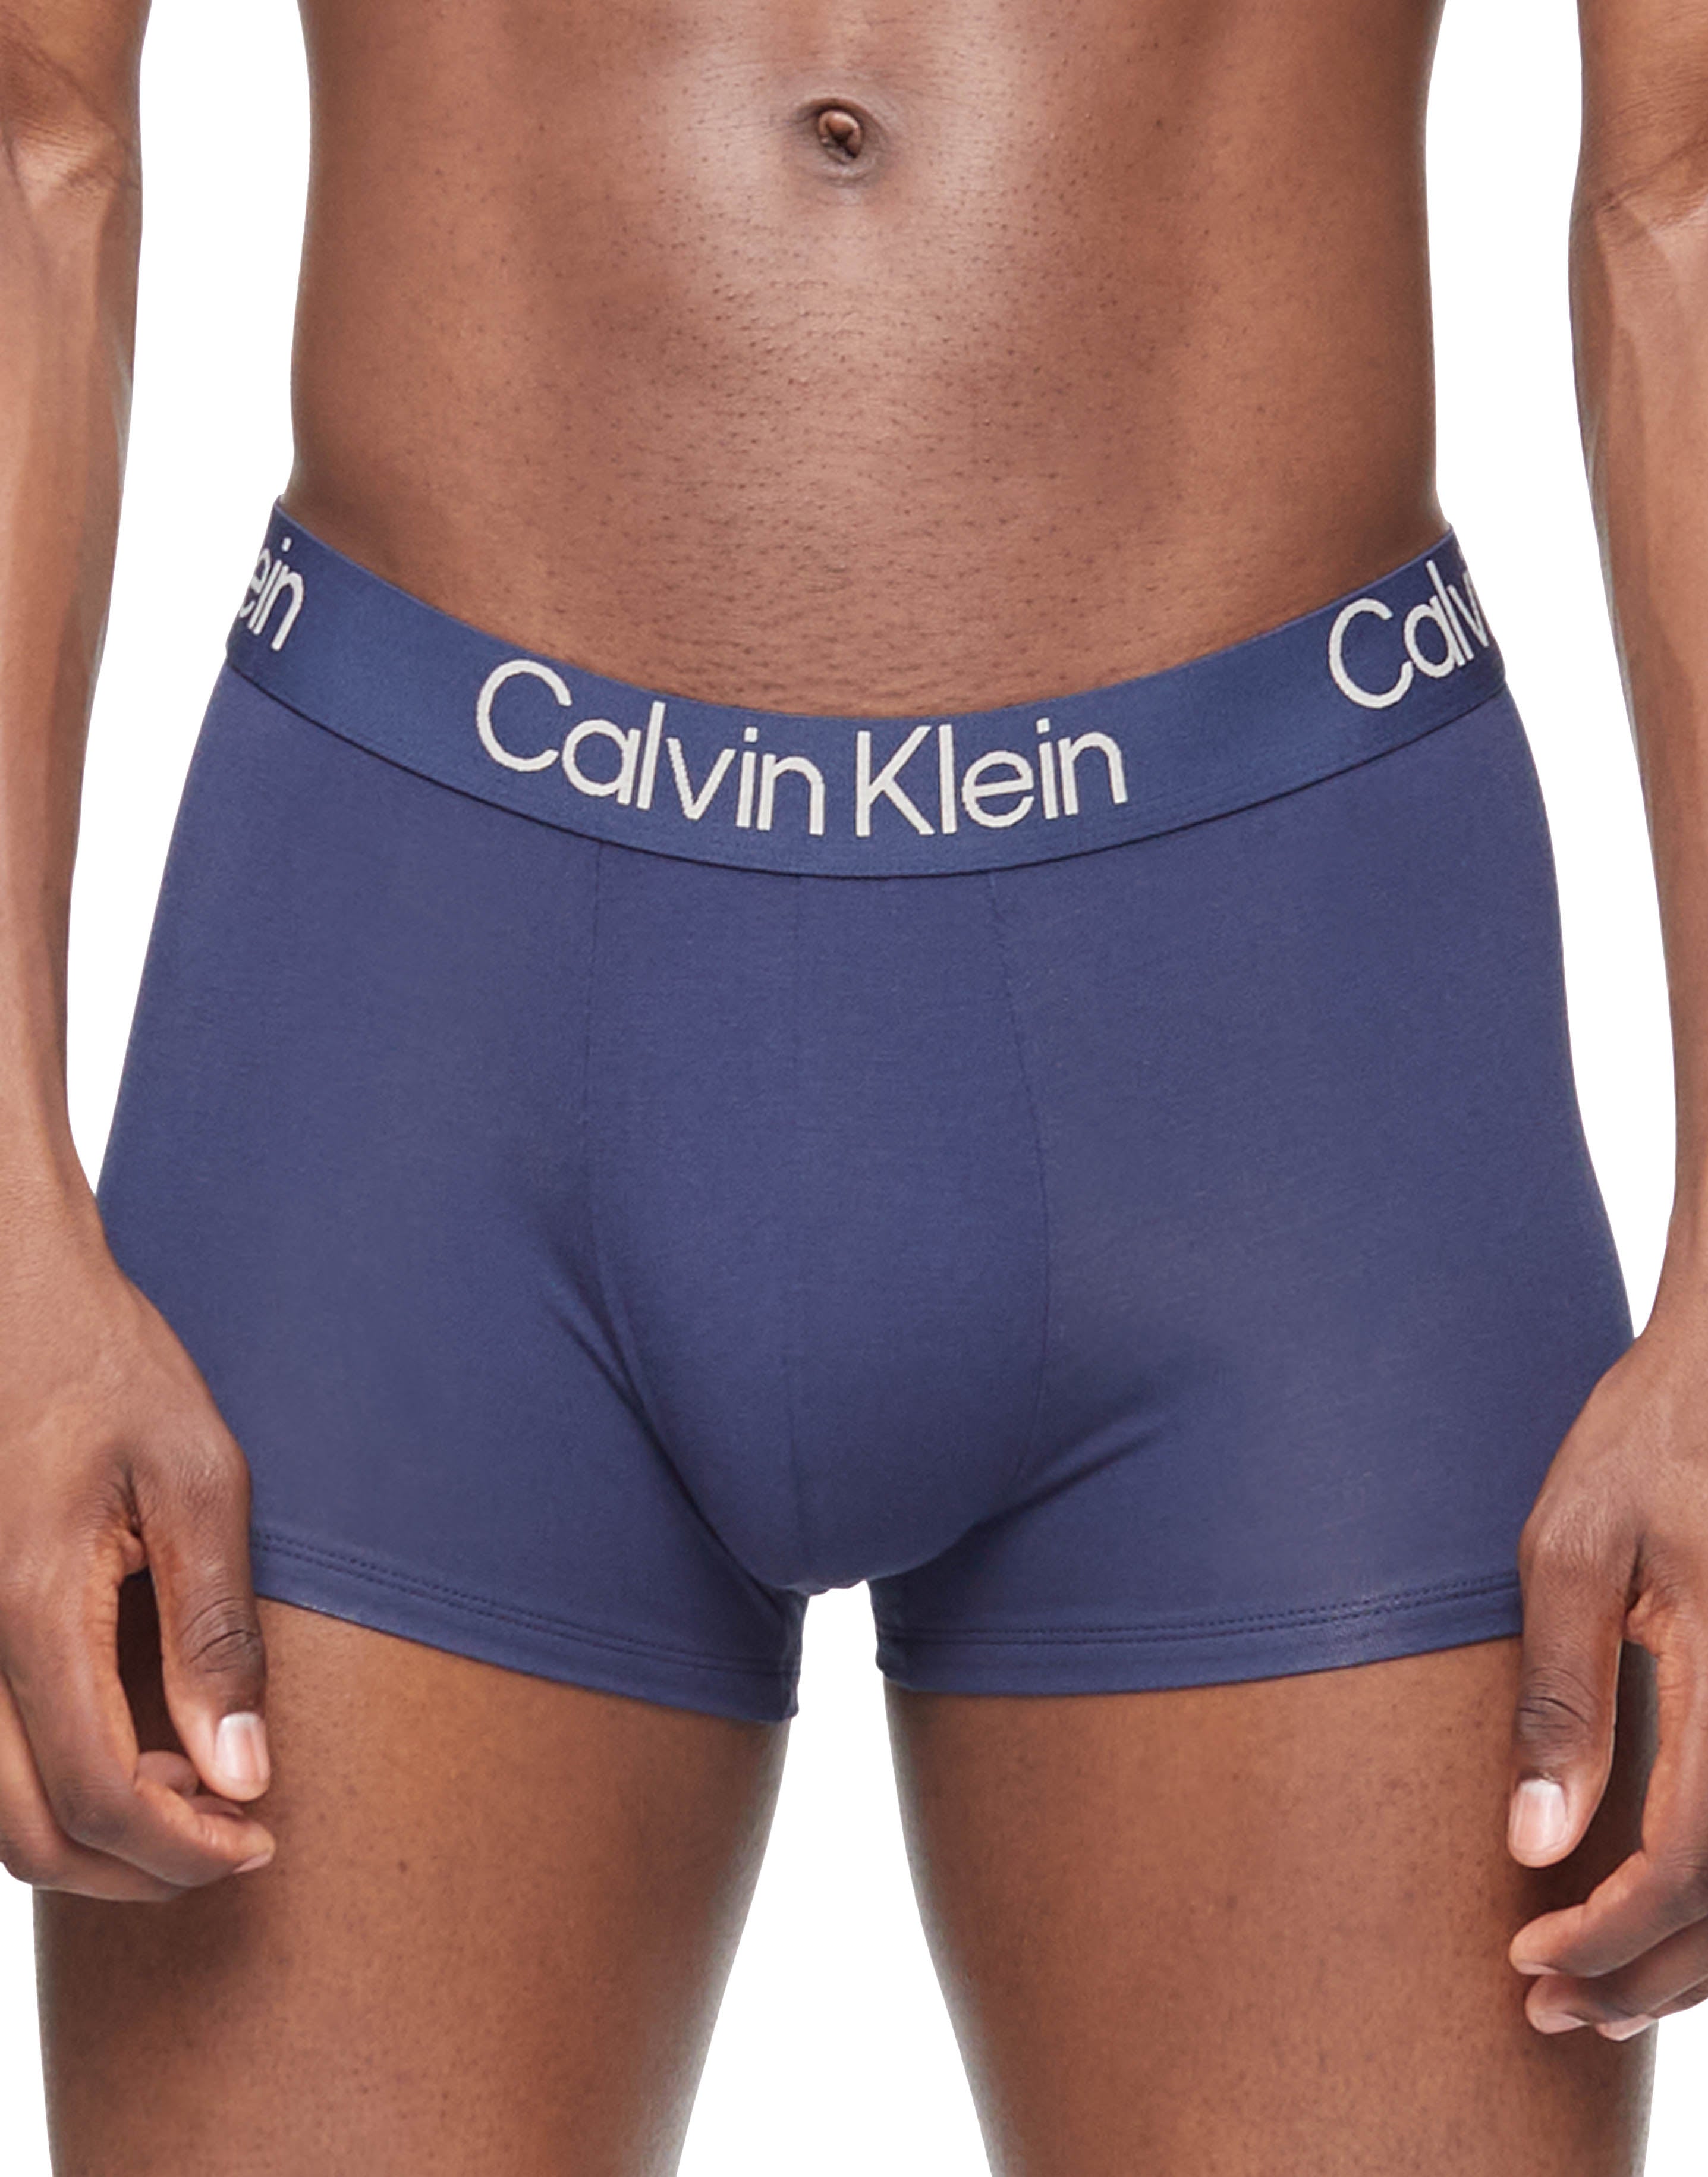 Calvin Klein Men's Body Modal Trunk, Blue Shadow, Small 